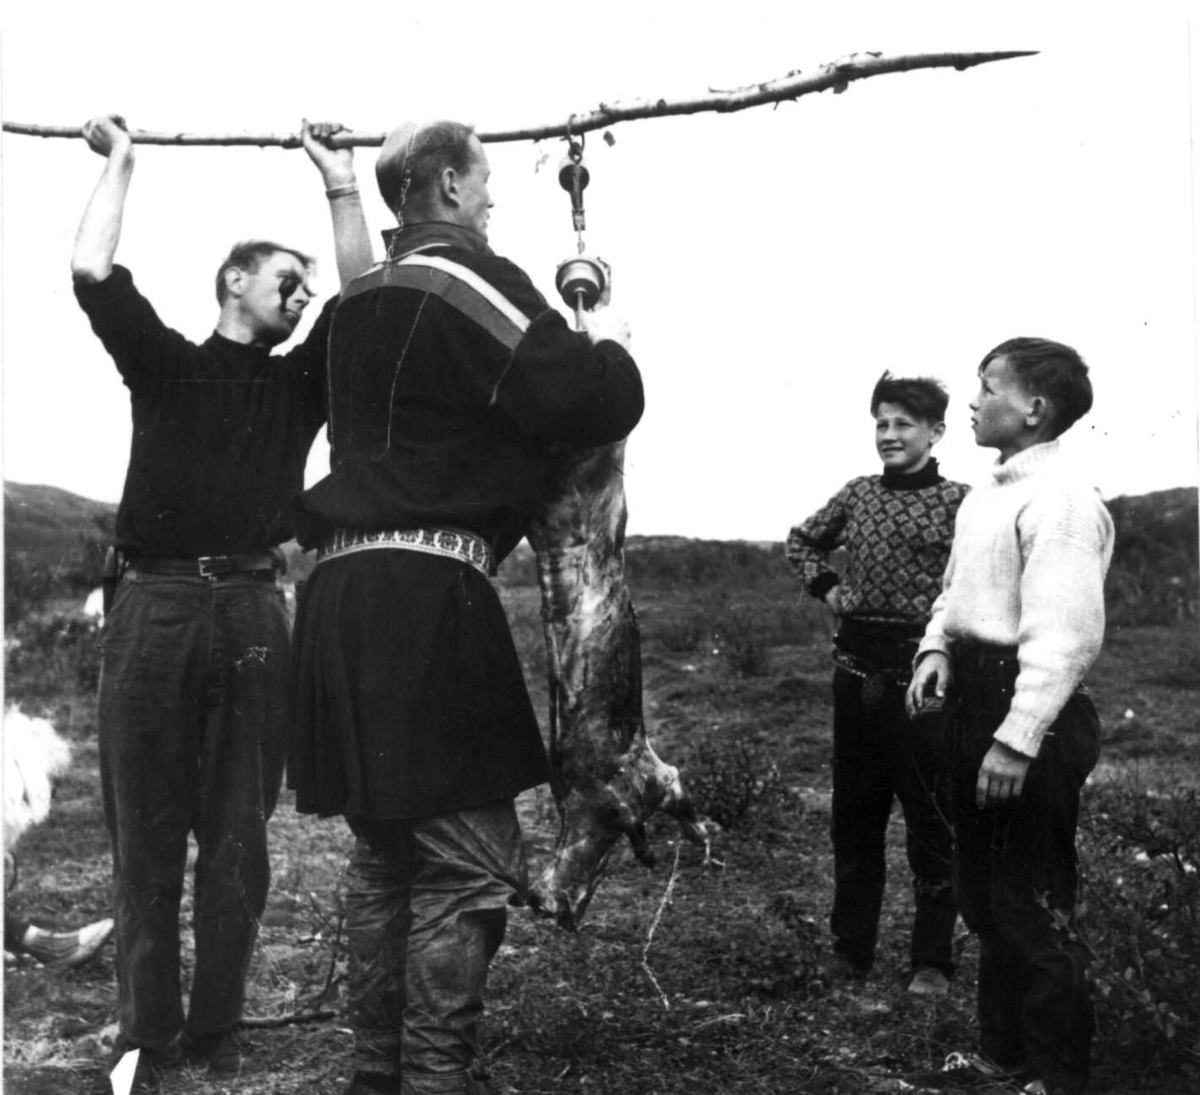 Reindriftskurs. Lærer Aarseth og dyrlge Skjenneberg veier en slaktet kalv mens elvever ser på.. Ytre Billefjord 1959.